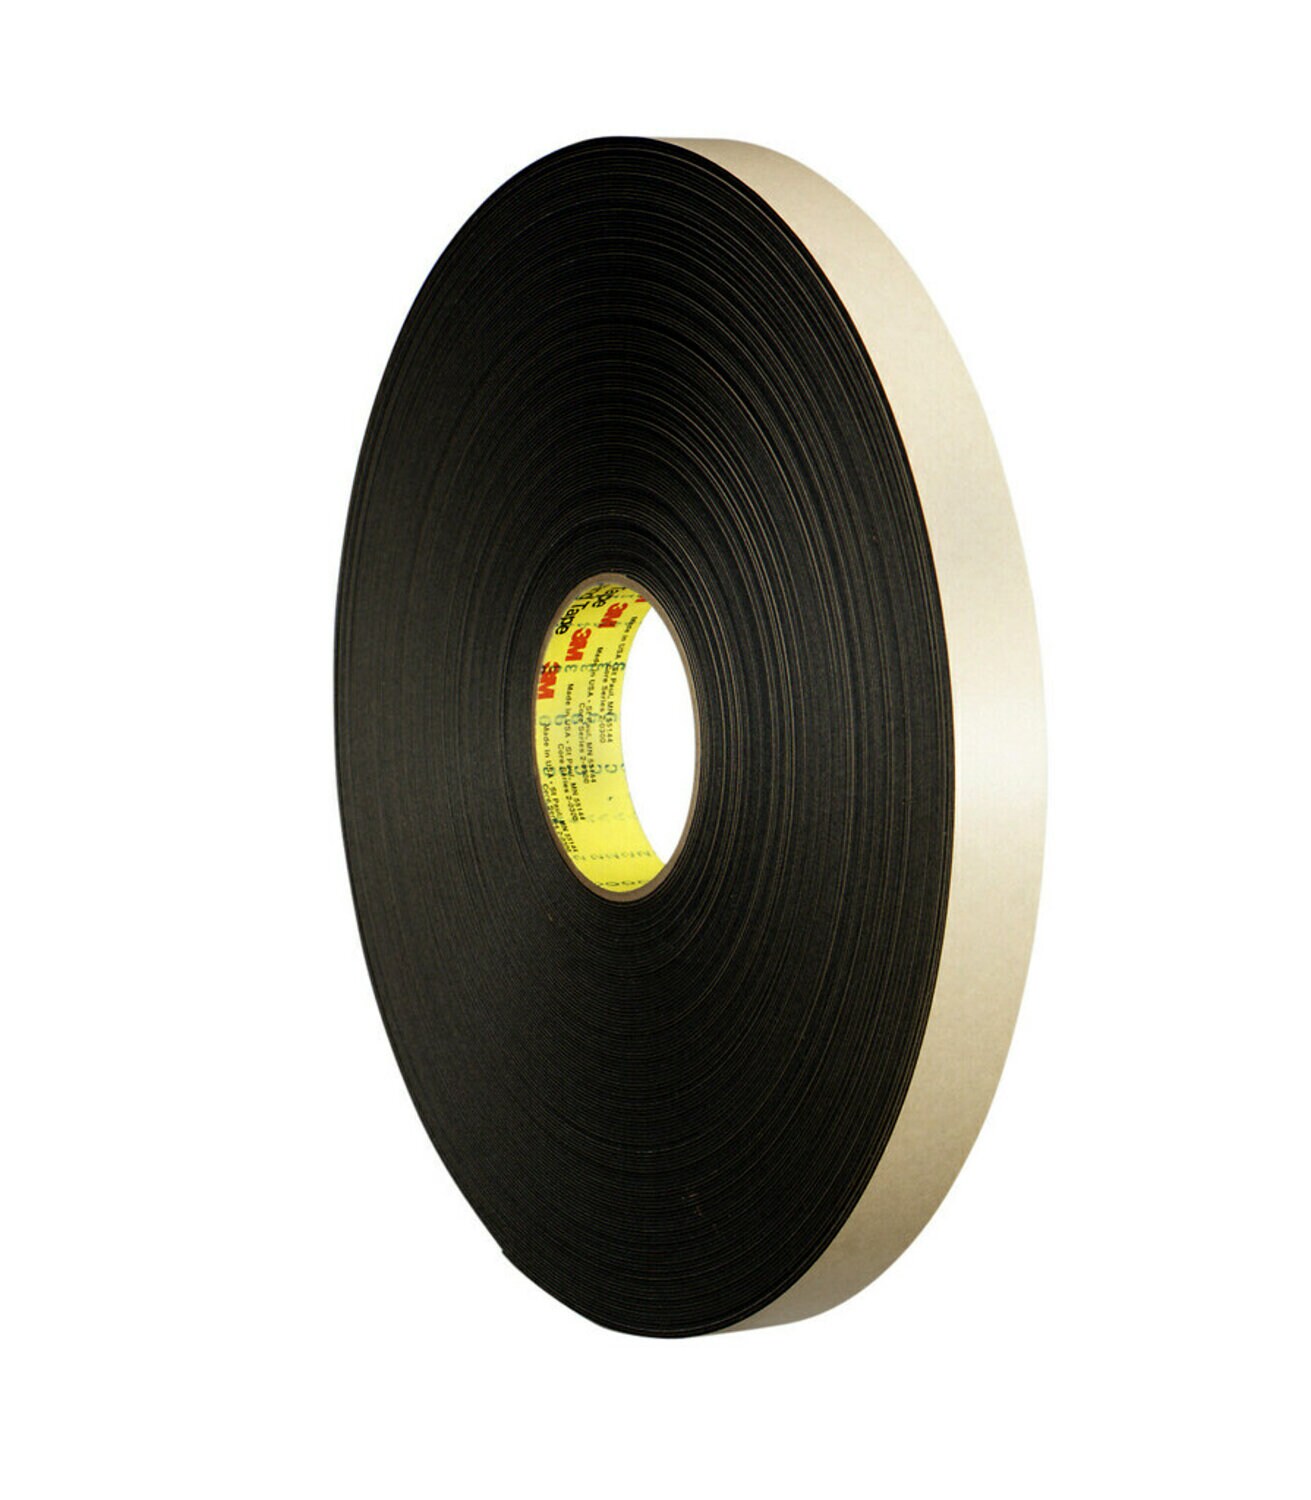 7000123708 - 3M Double Coated Polyethylene Foam Tape 4492B, Black, 1/2 in x 72 yd,
31 mil, 18 rolls per case